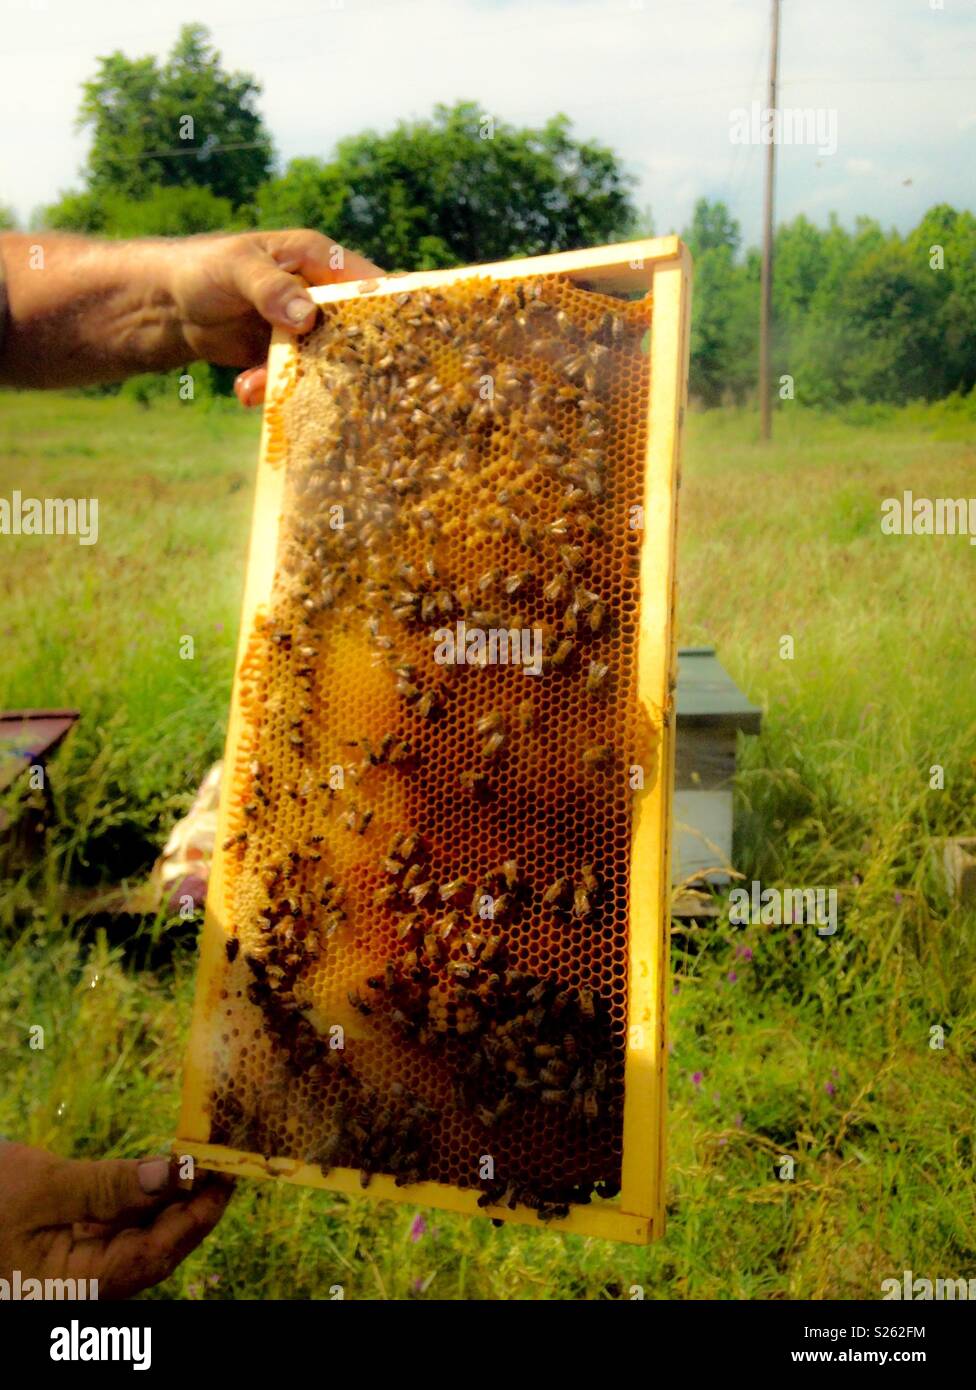 Fotos de verano de ensueño de abejas y miel en el bastidor celebrada por la mano del hombre en la granja meadow Foto de stock